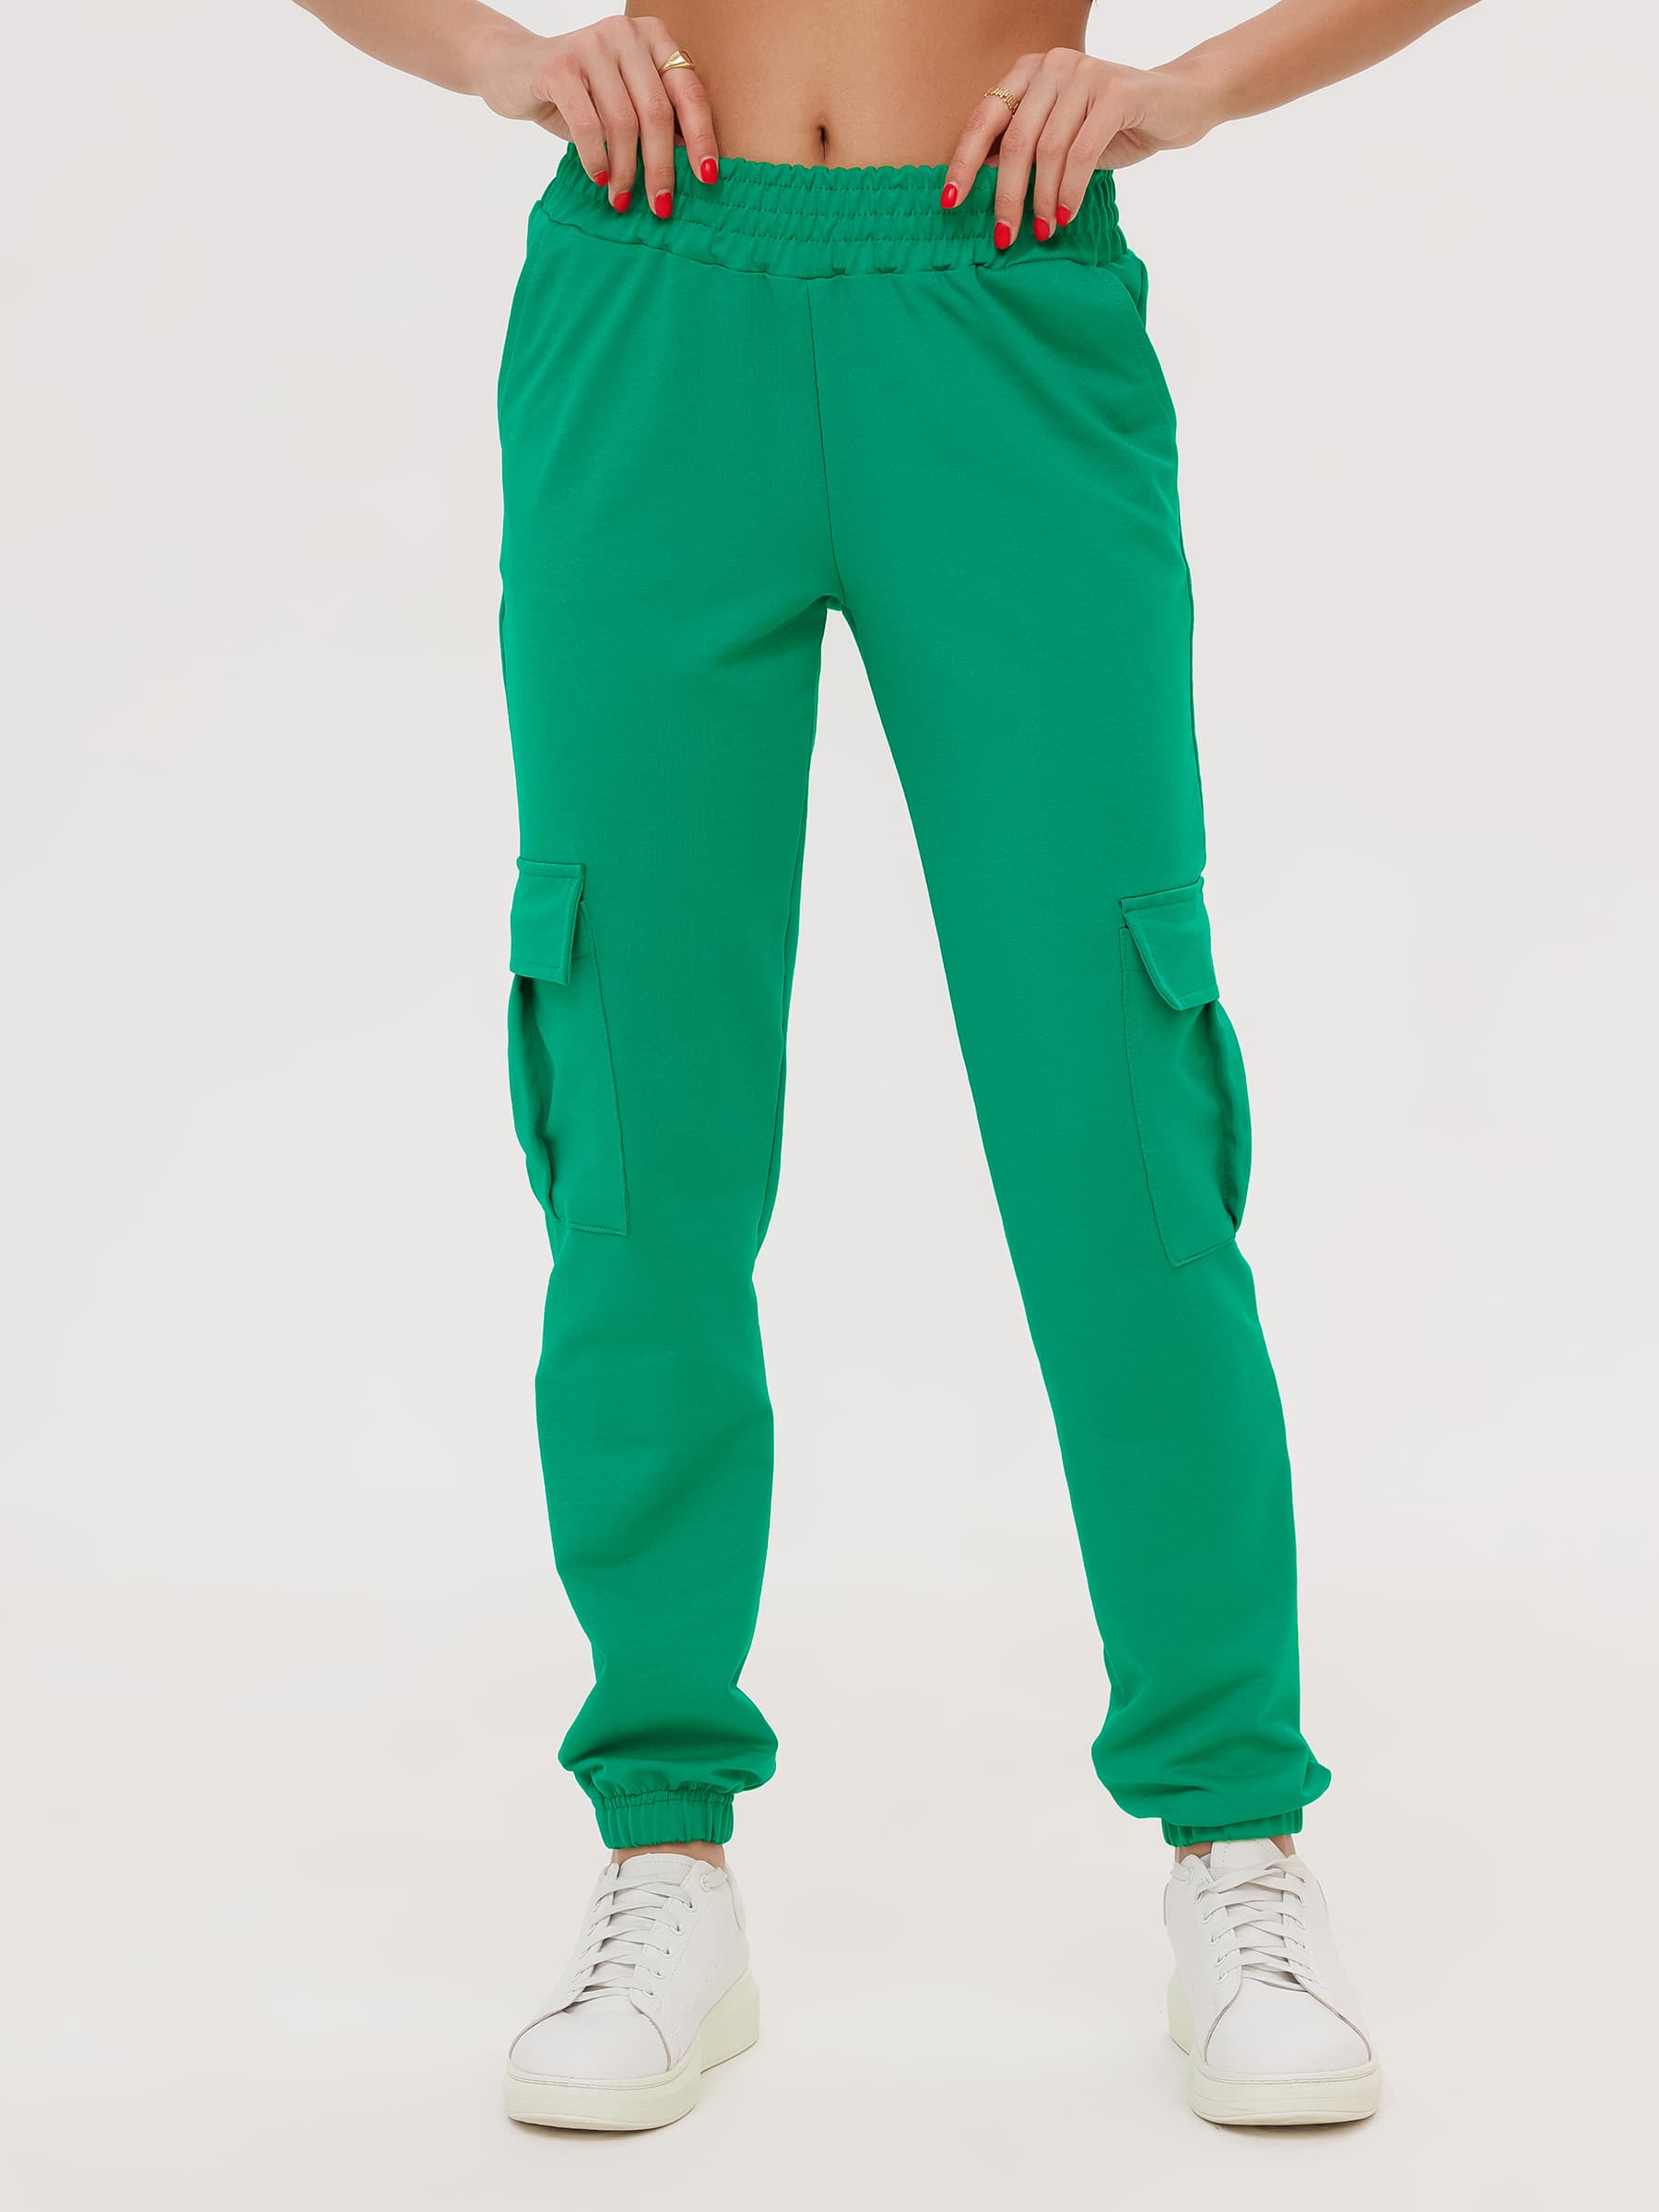 Жен. брюки повседневные арт. 23-0524 Зеленый р. 42 Моделлини, размер 42 - фото 3